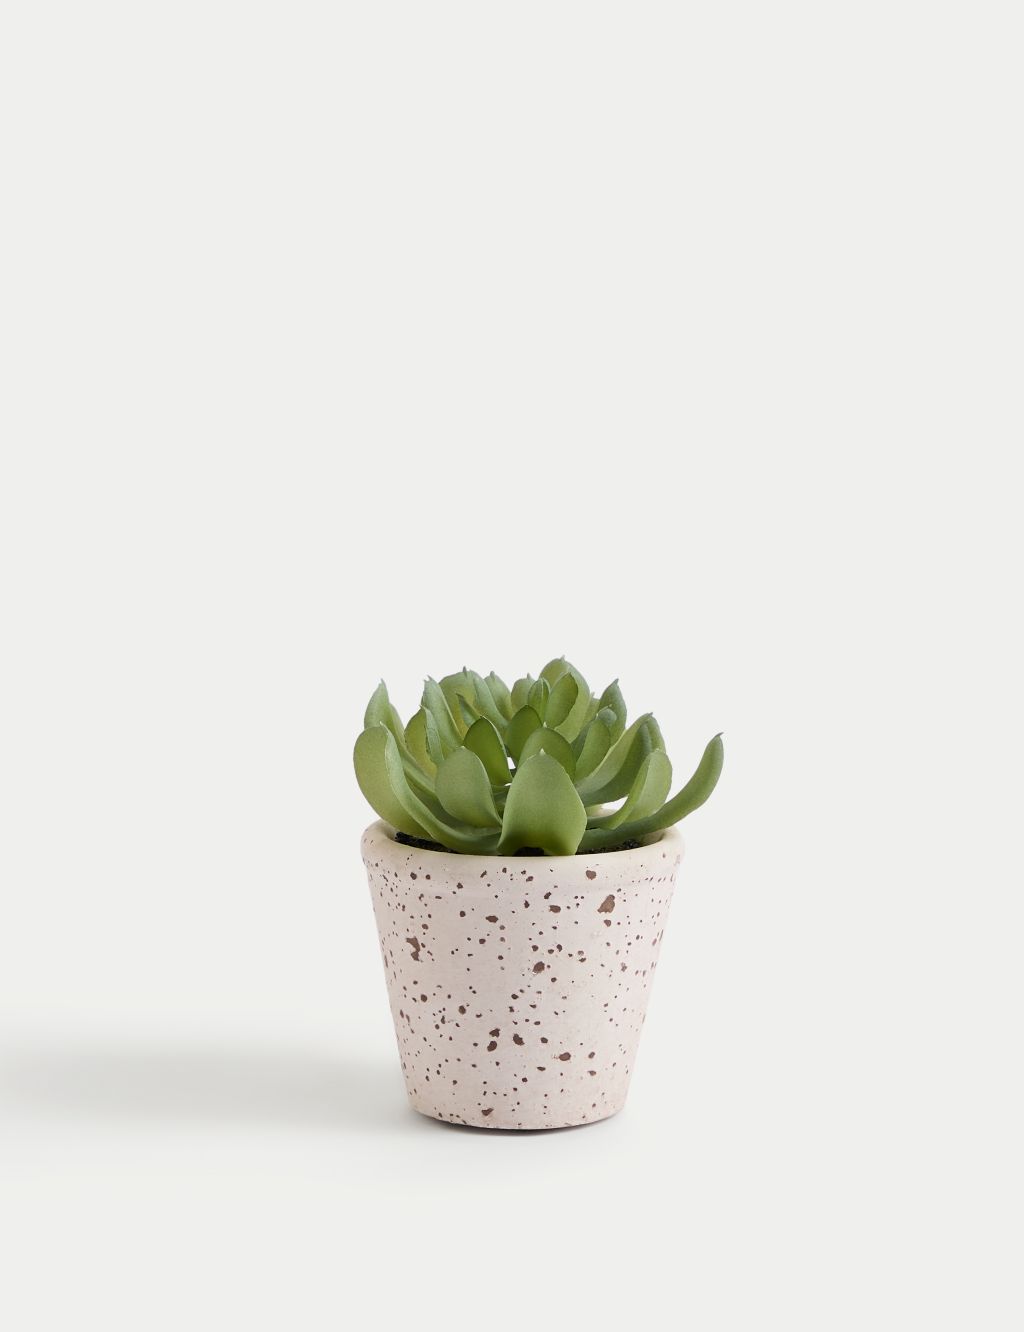 Artificial Succulent in Ceramic Pot image 1